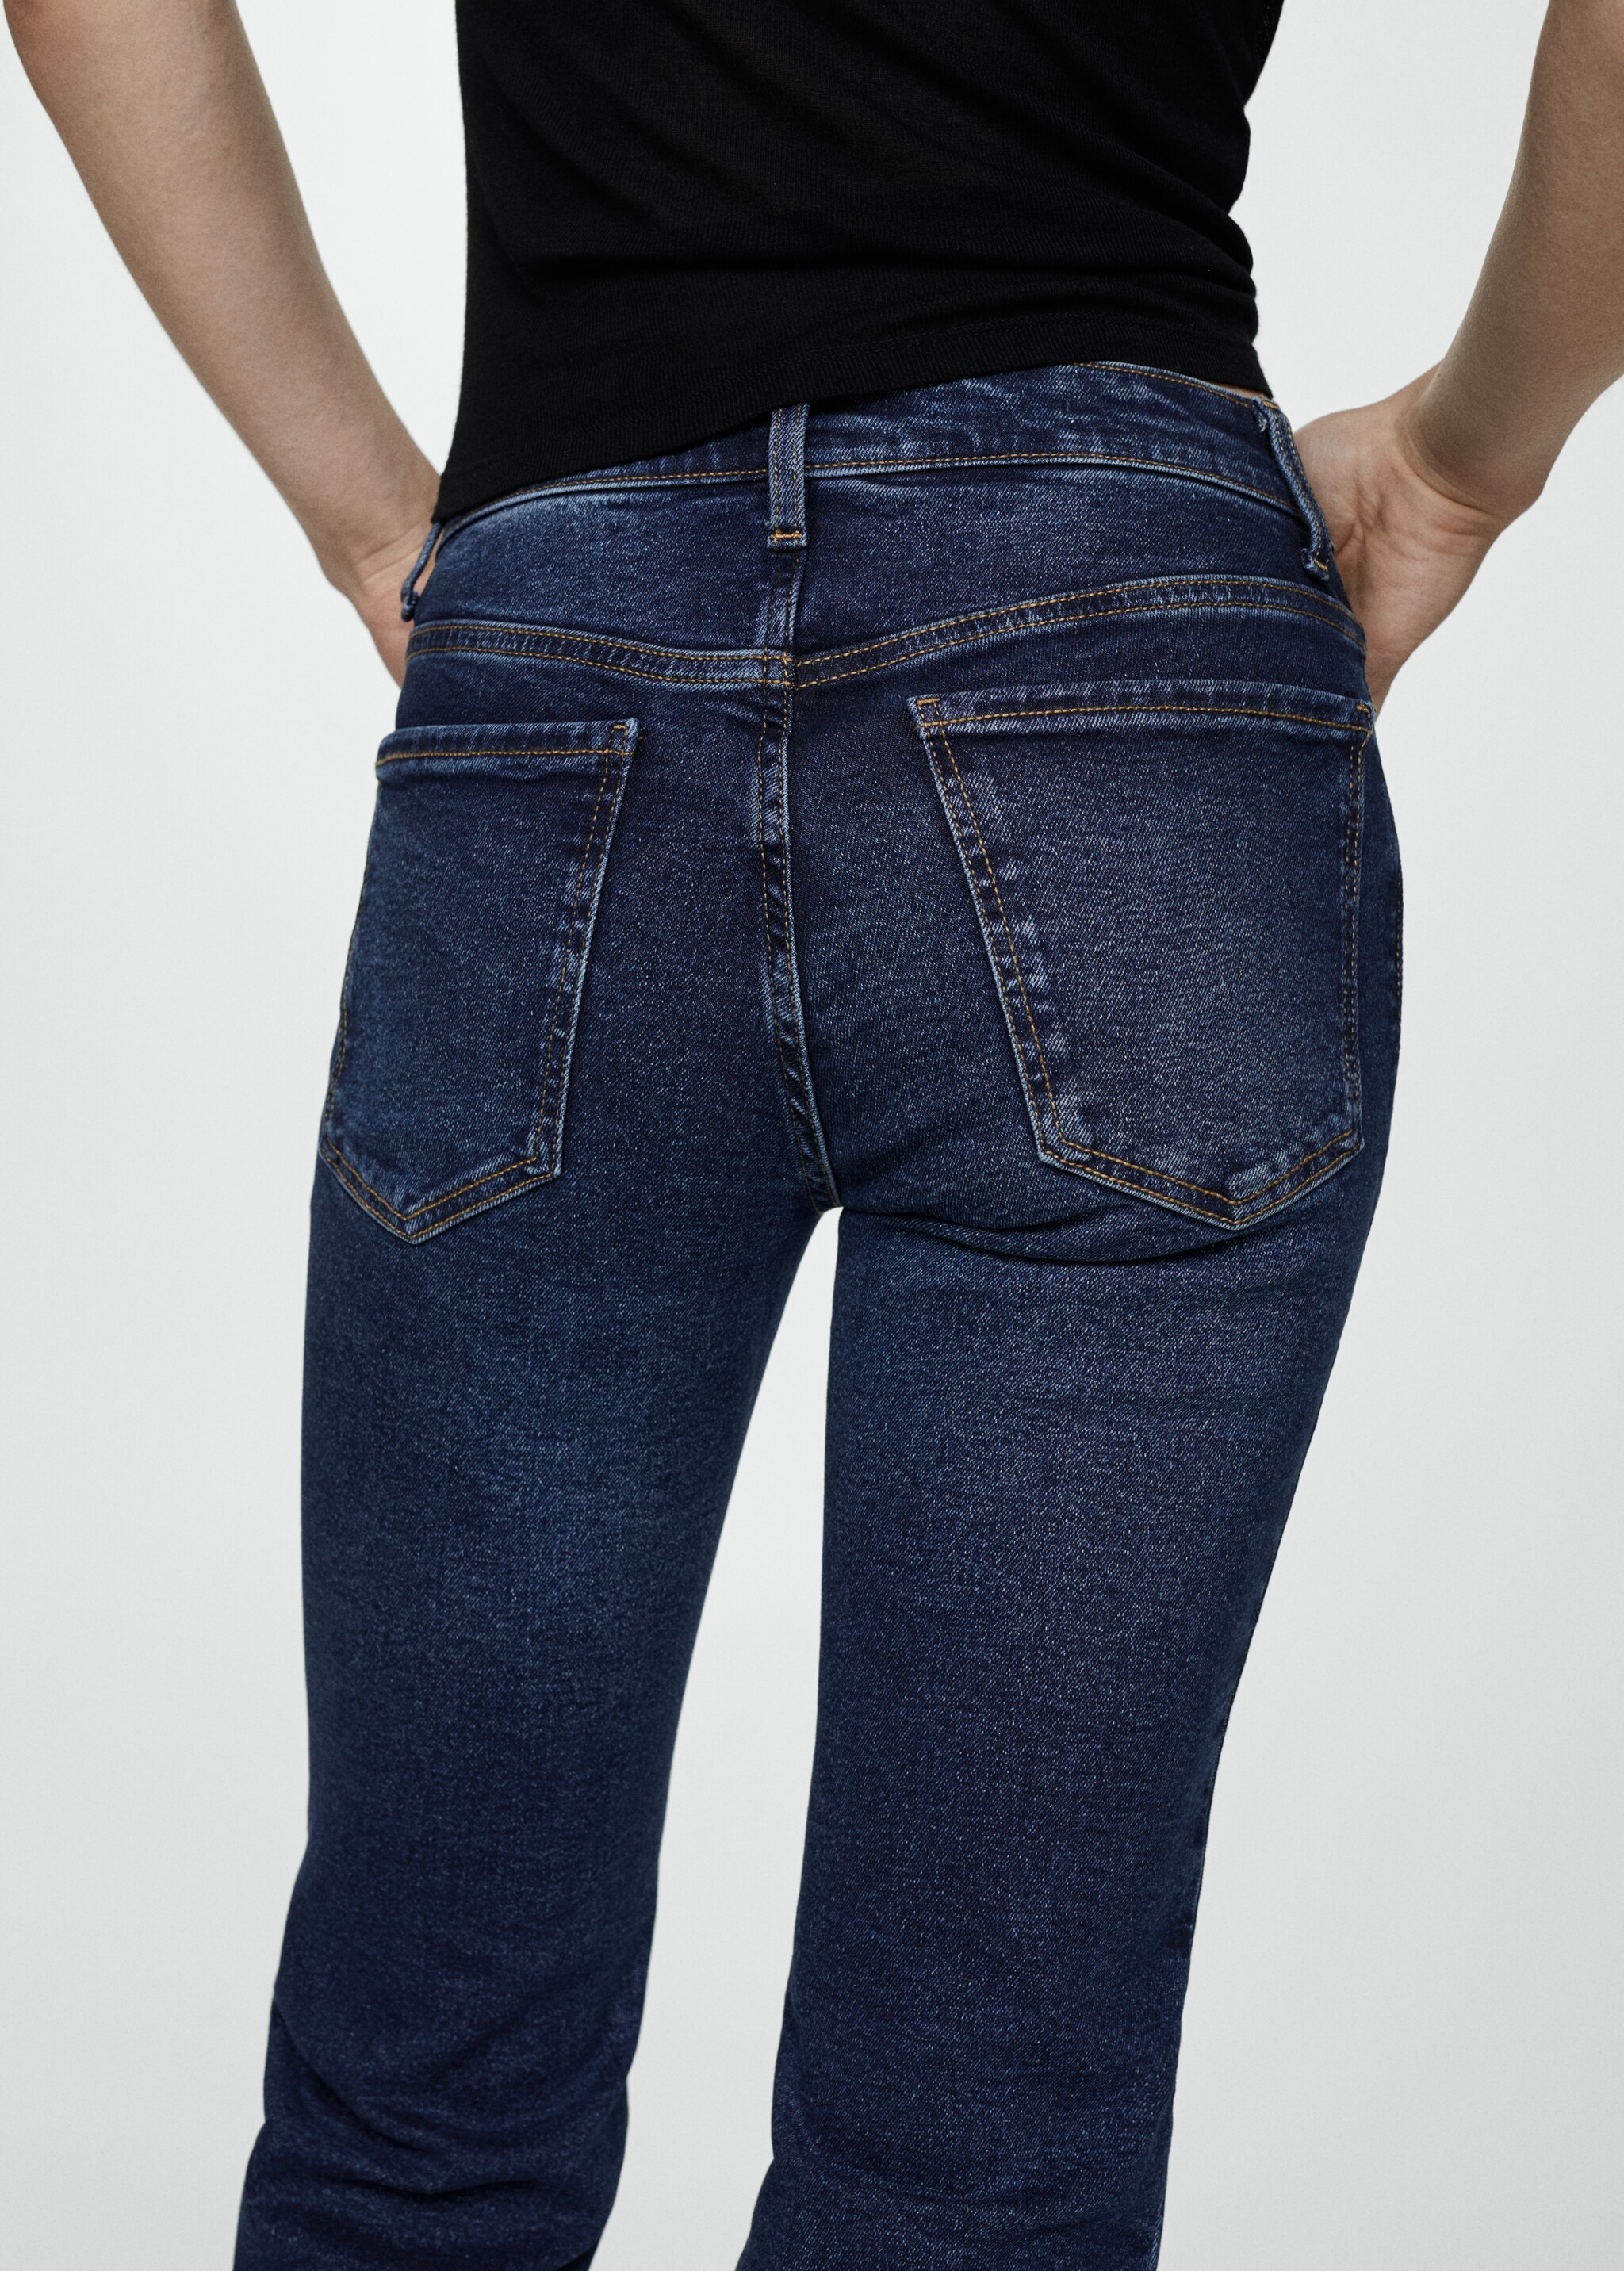 Укороченные джинсы flare - Деталь изделия 2